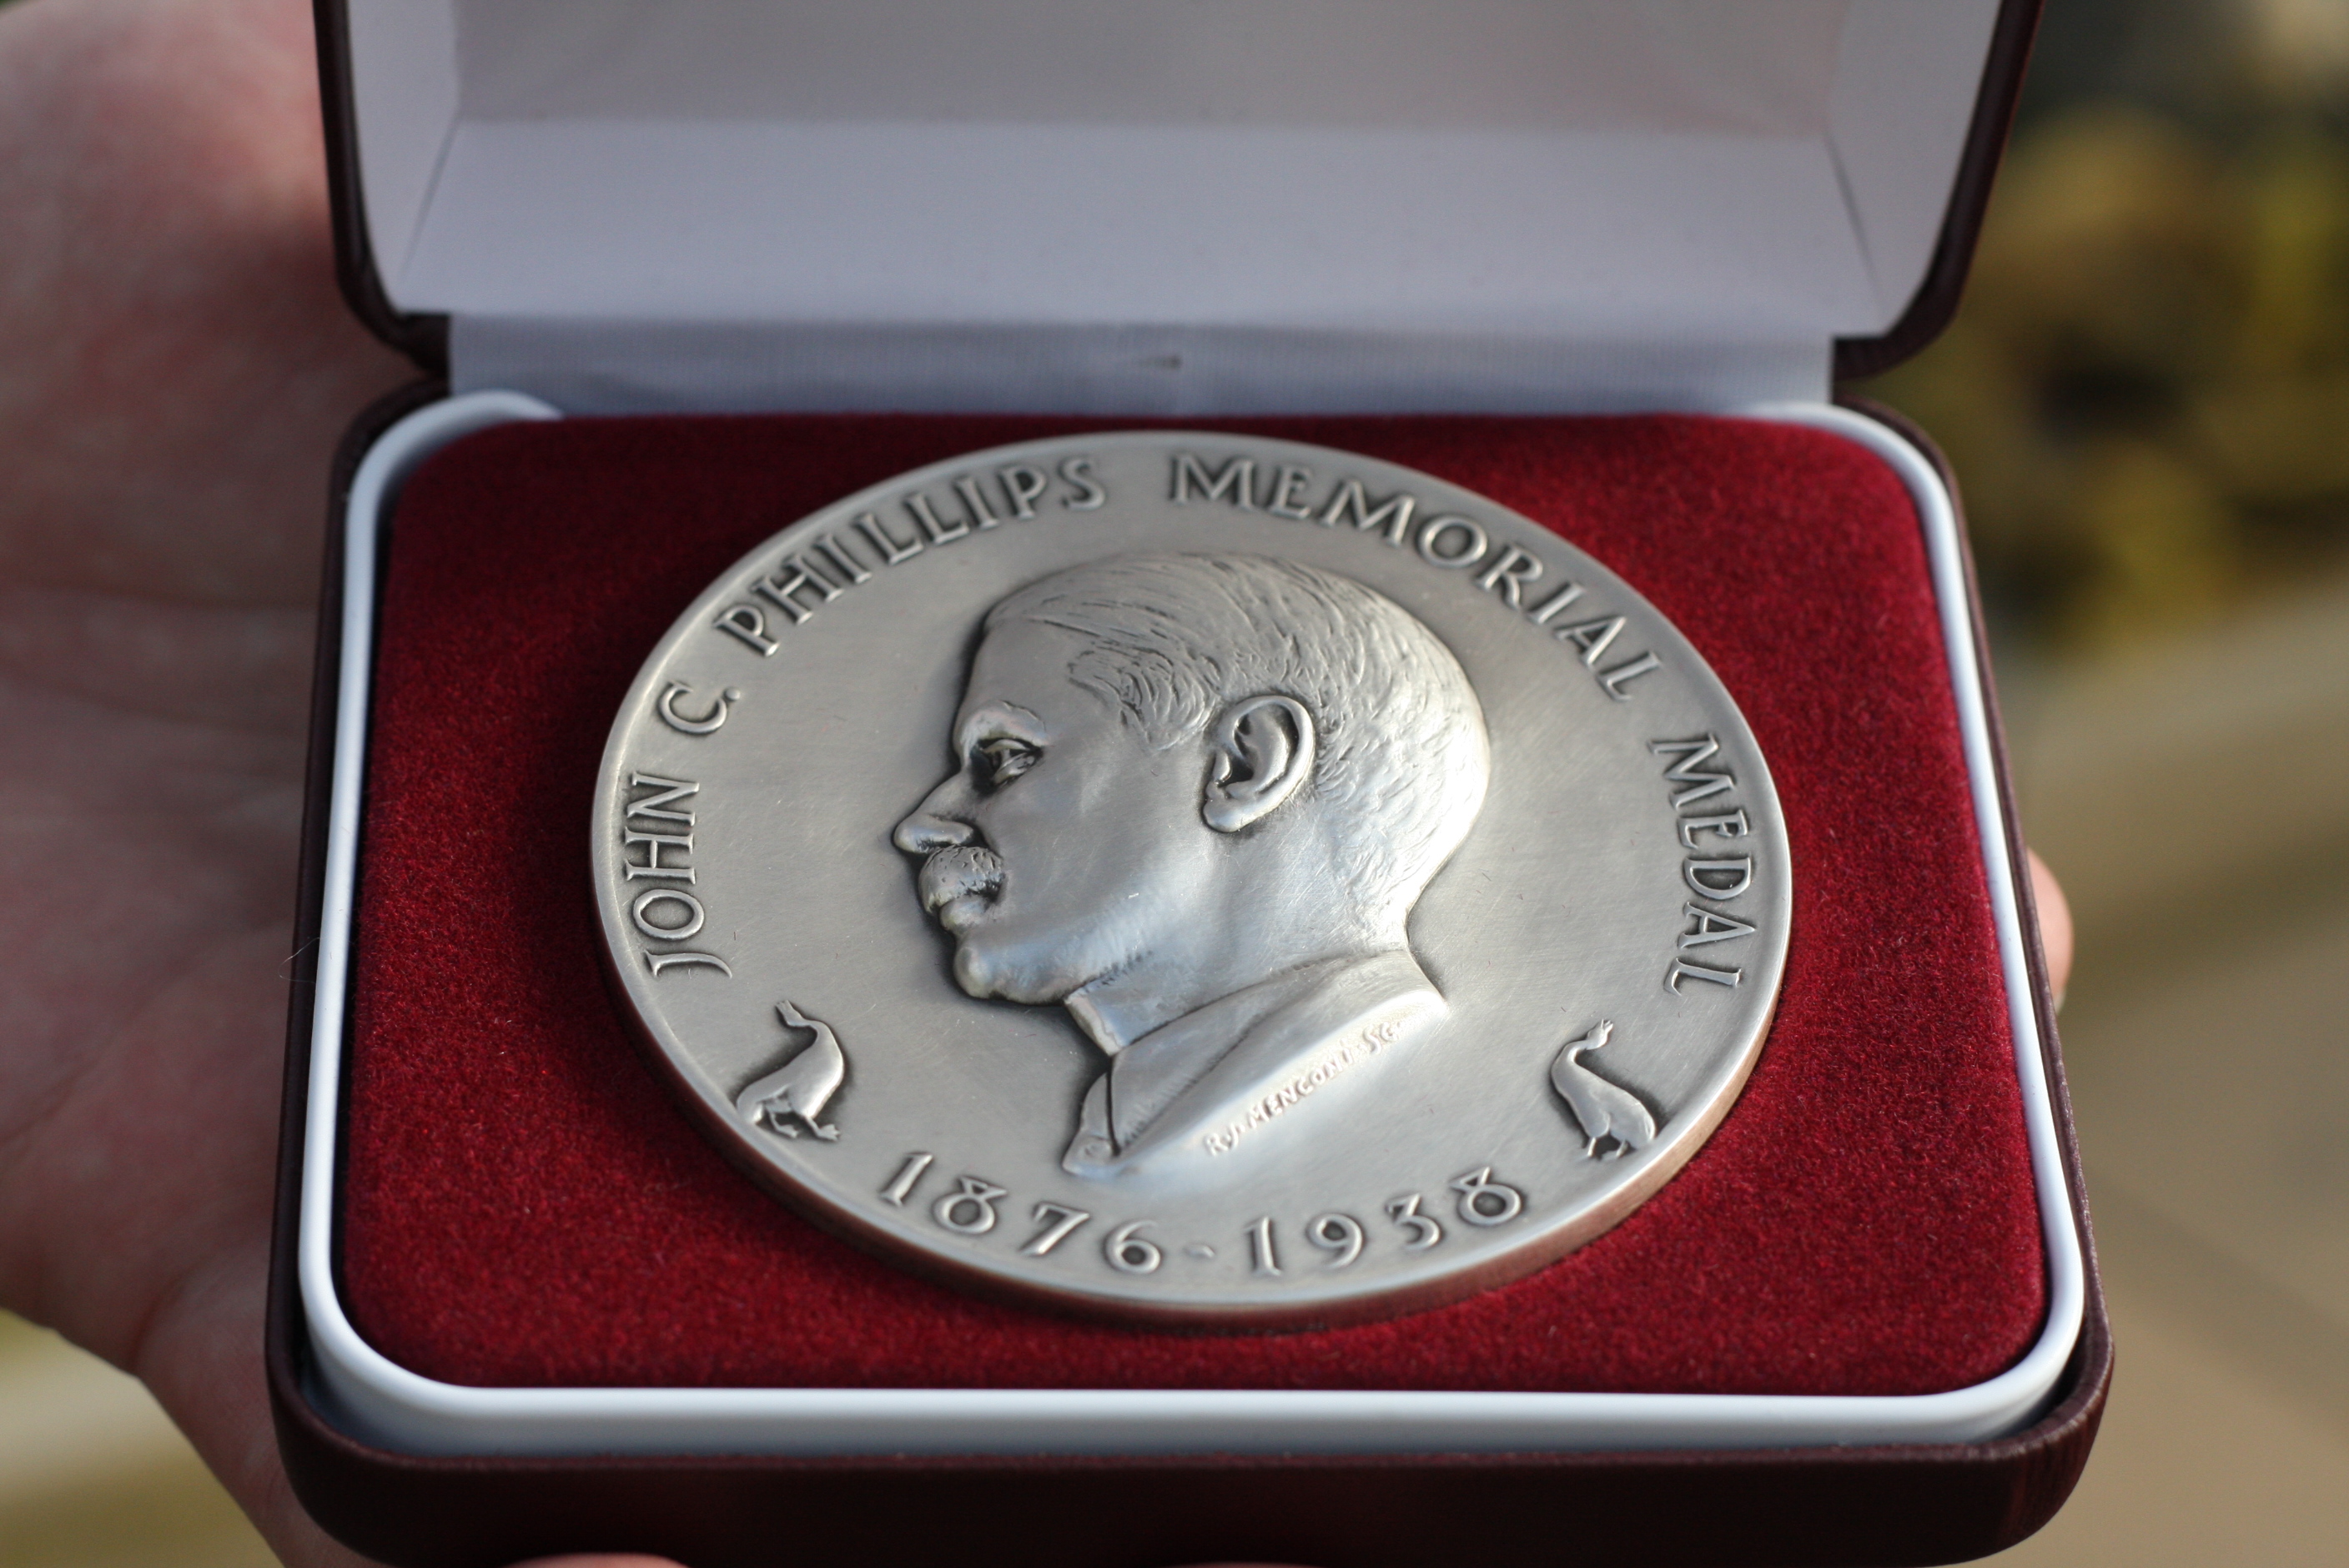 The John C. Phillips Memorial Medal